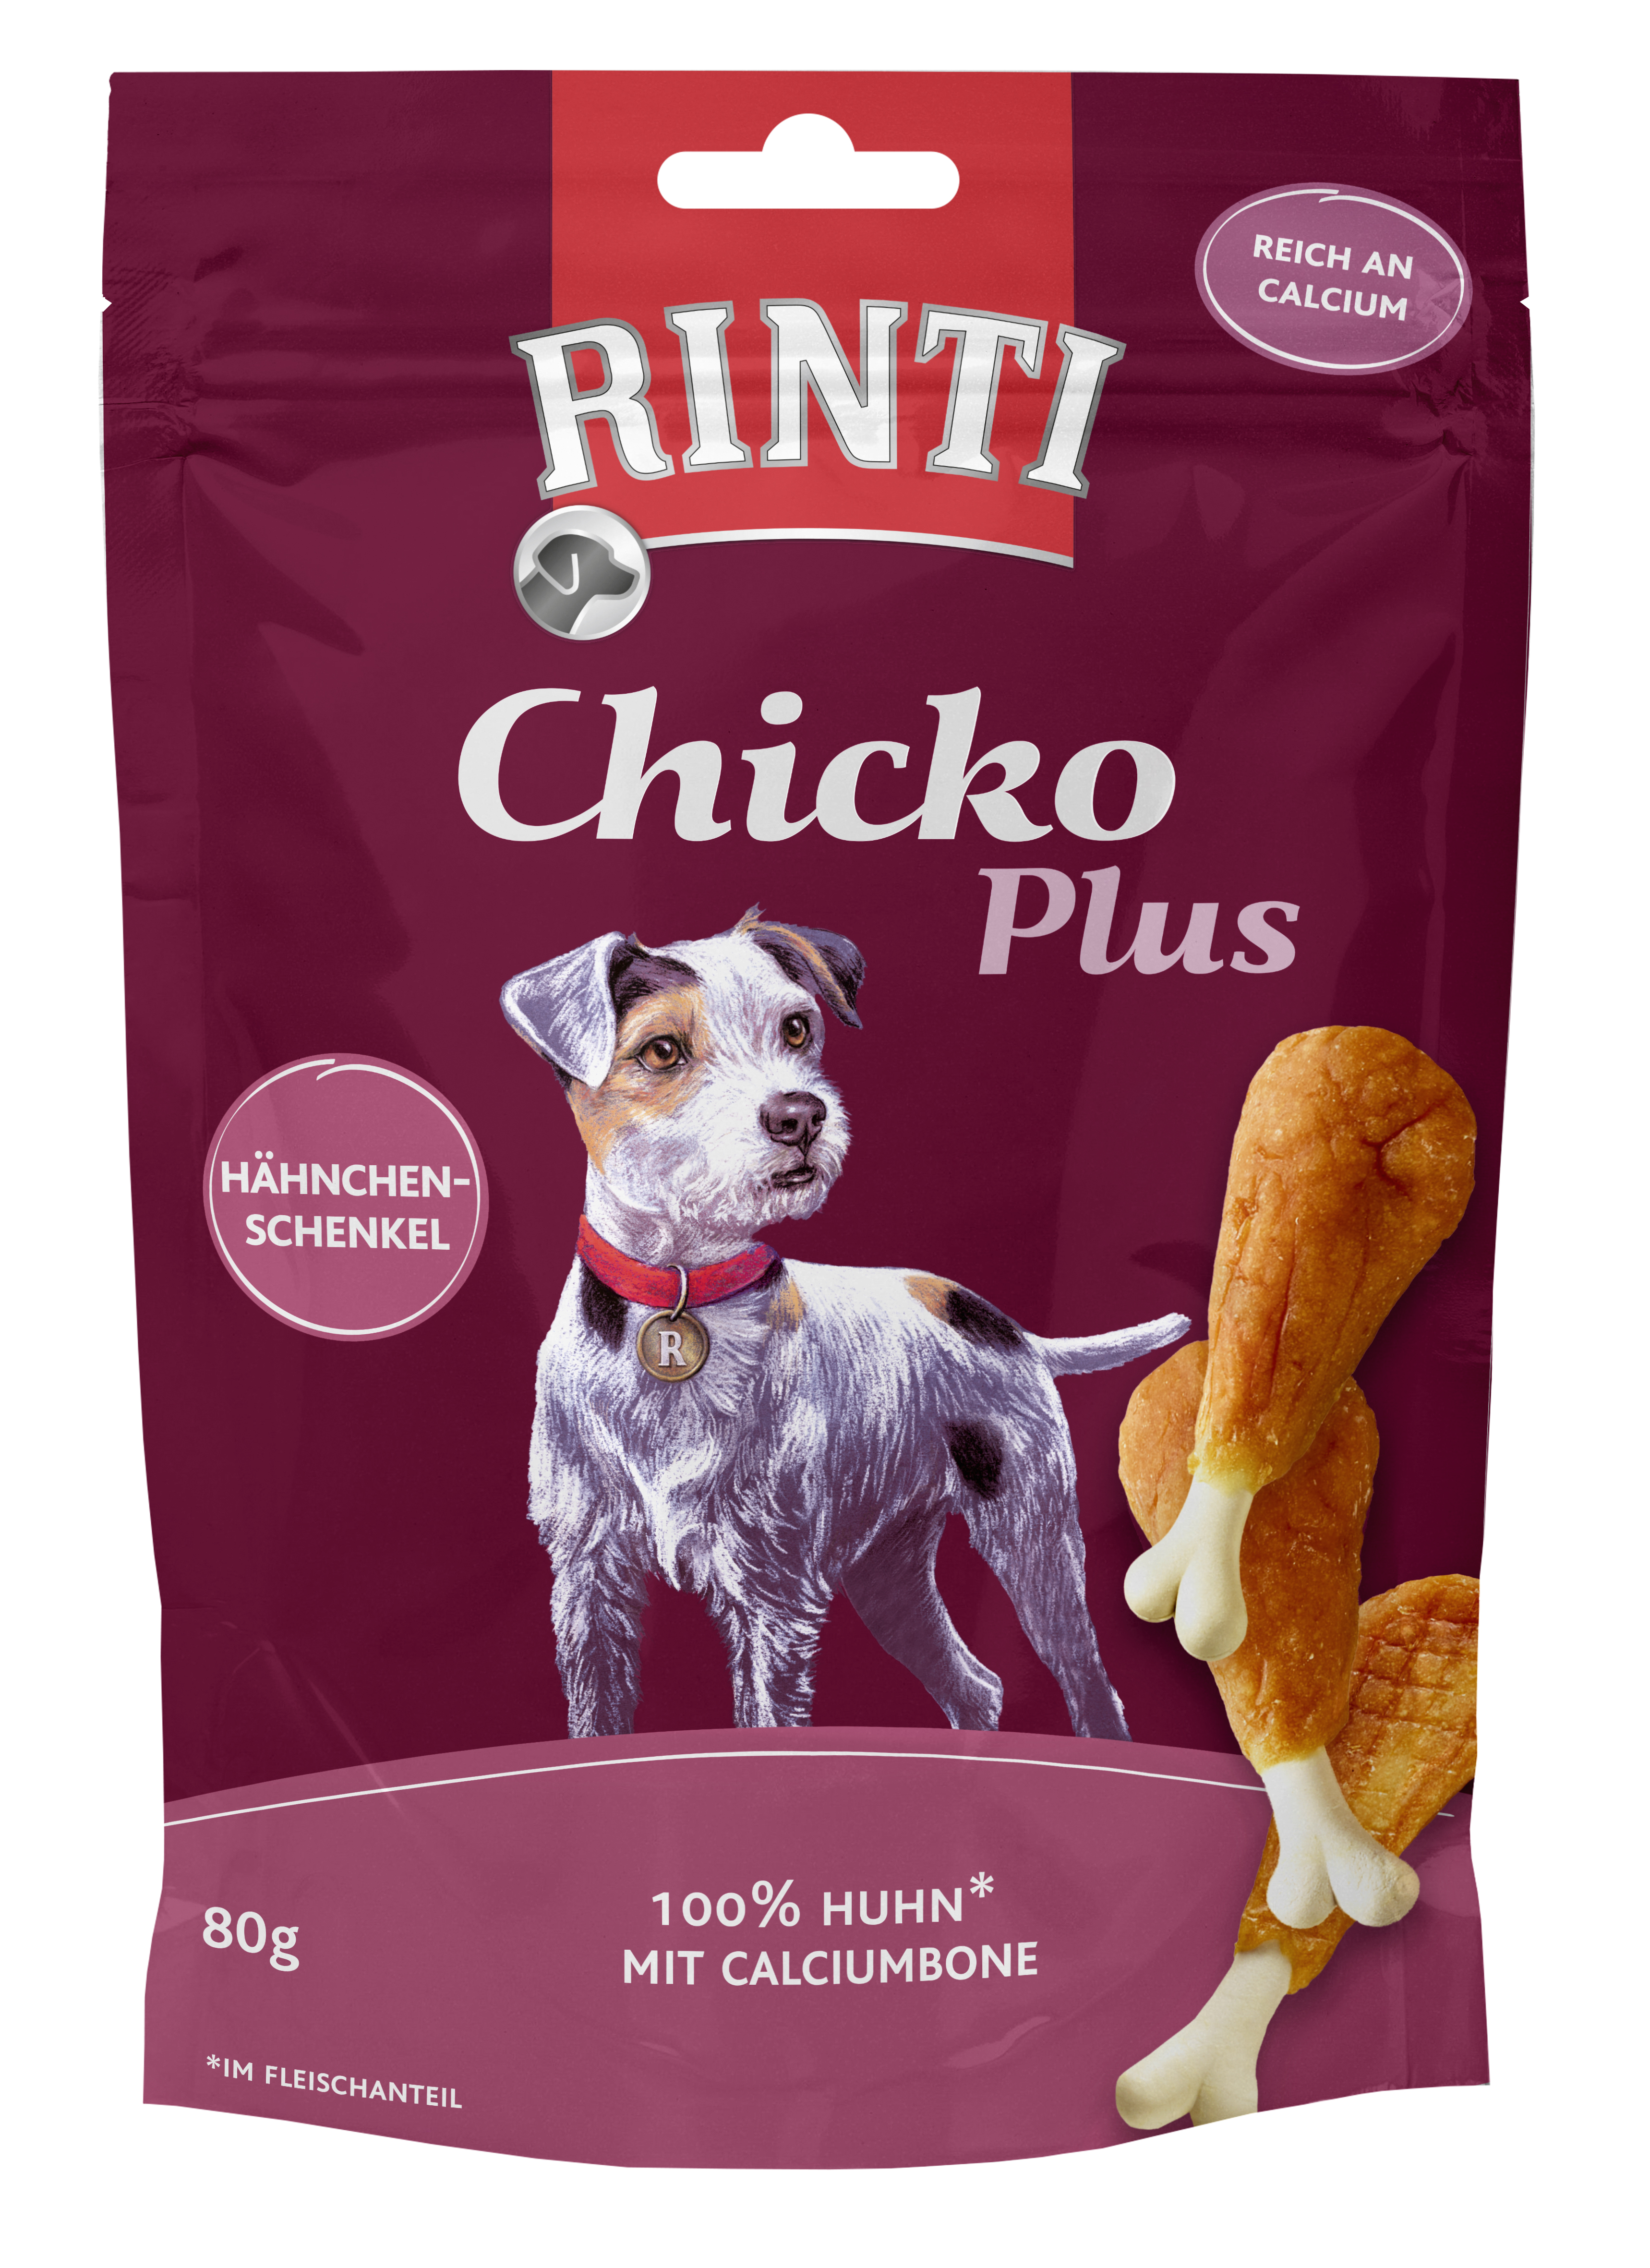 Rinti Chicko Plus Hähnchenschenkel mit Calciumbone 80 g